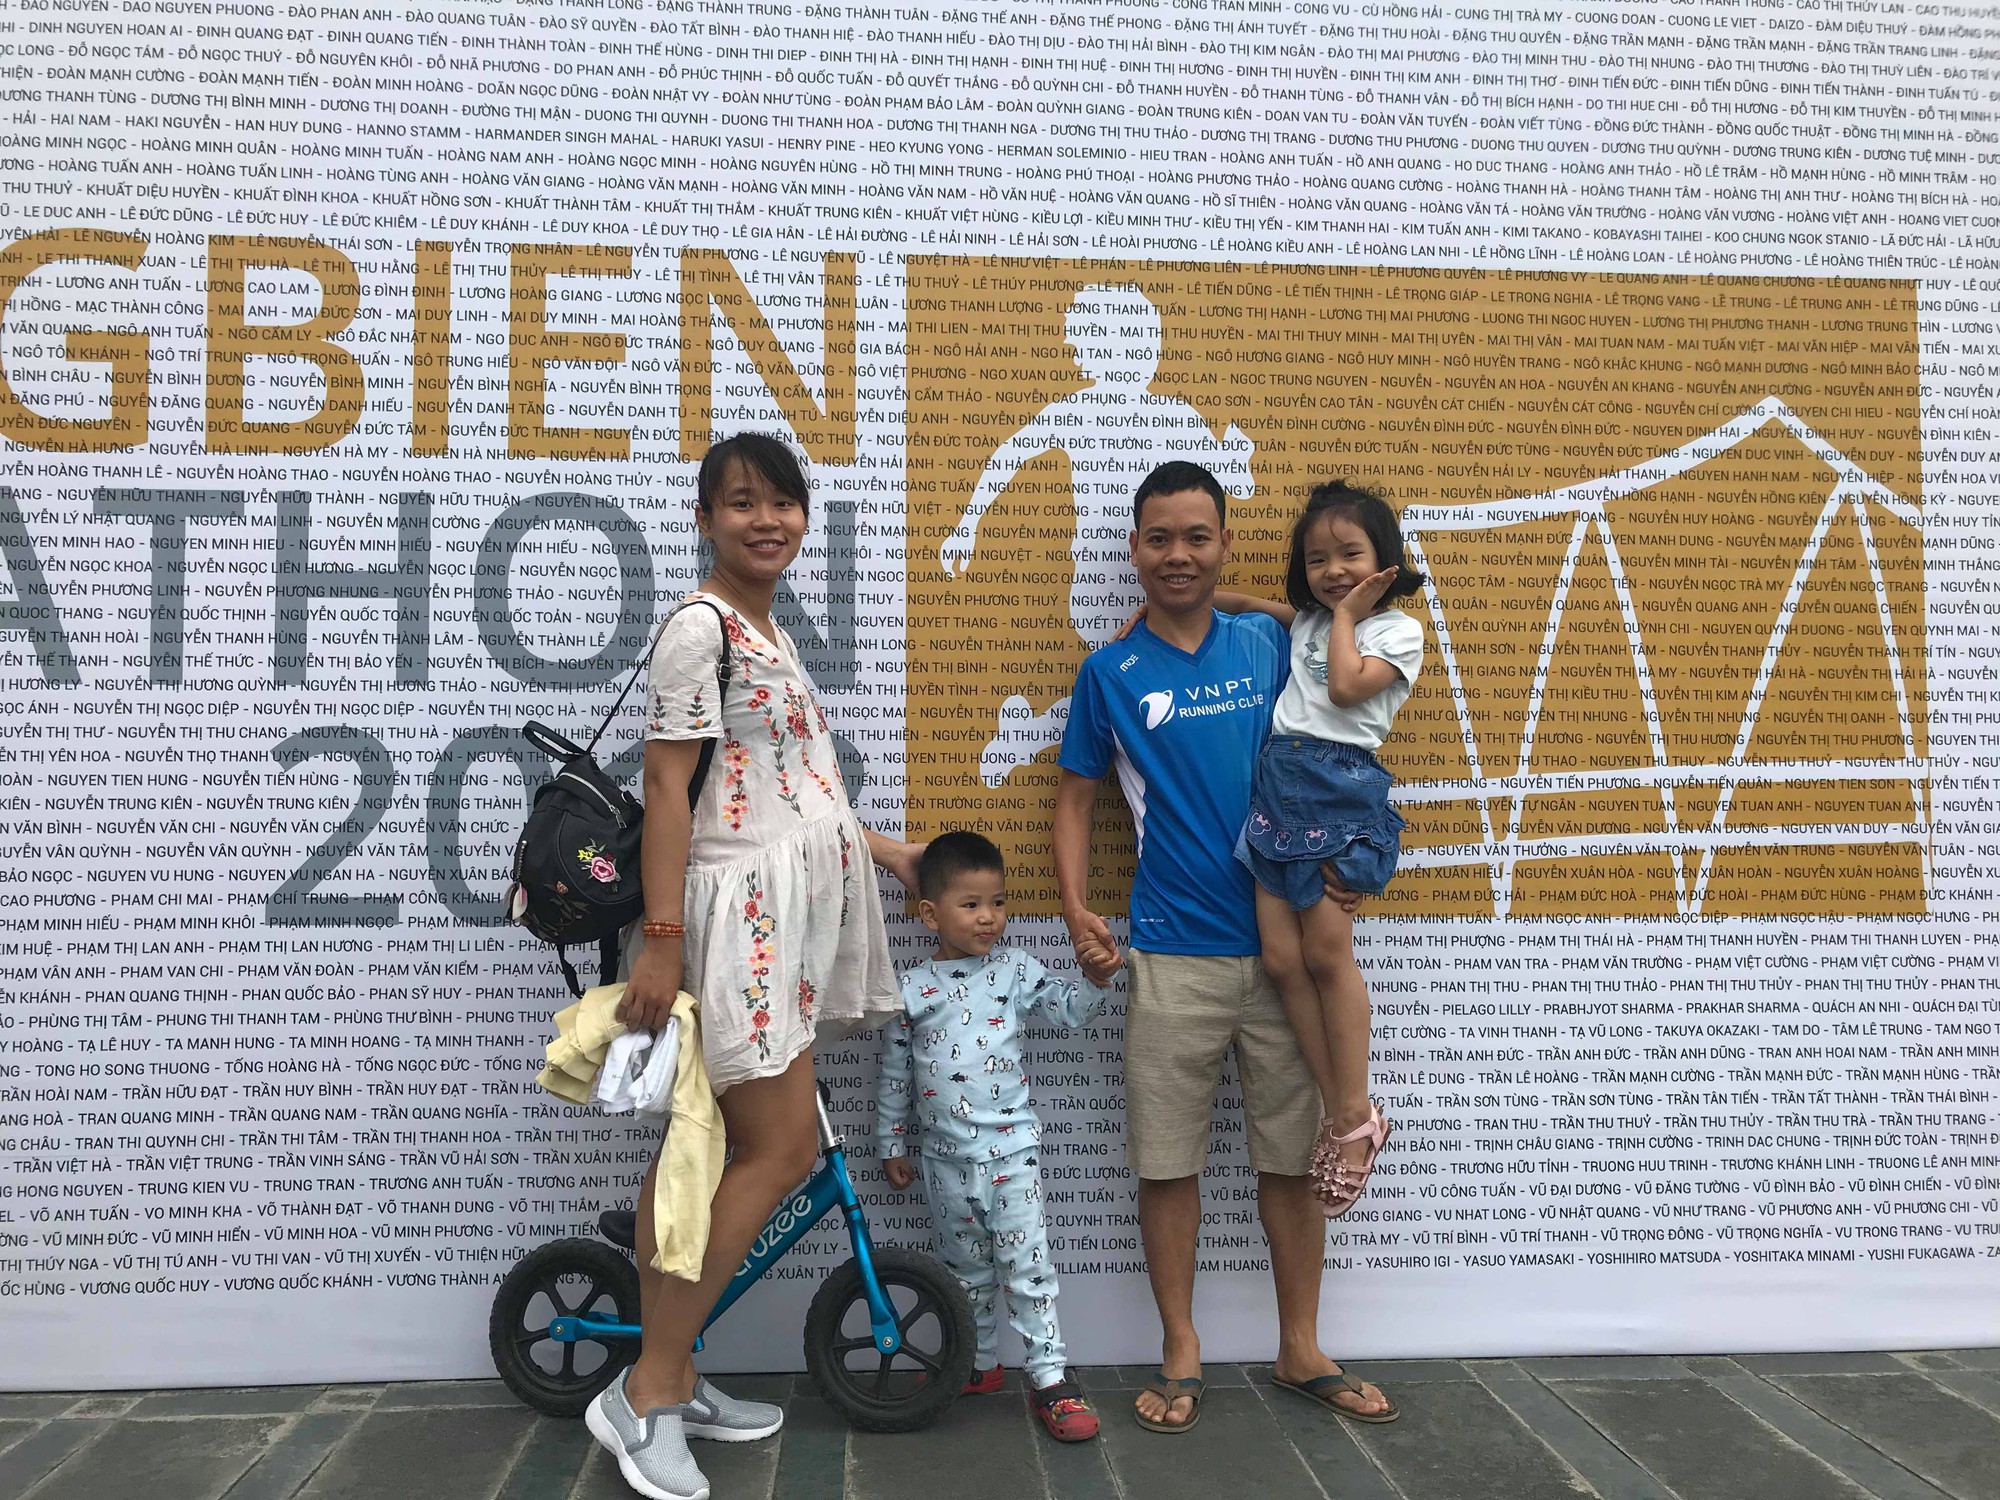 Chờ 2 tuần, cặp vợ chồng runner lấy tên thủ môn Lâm tây đặt cho con sau trận CK AFF Cup 2018 - Ảnh 5.